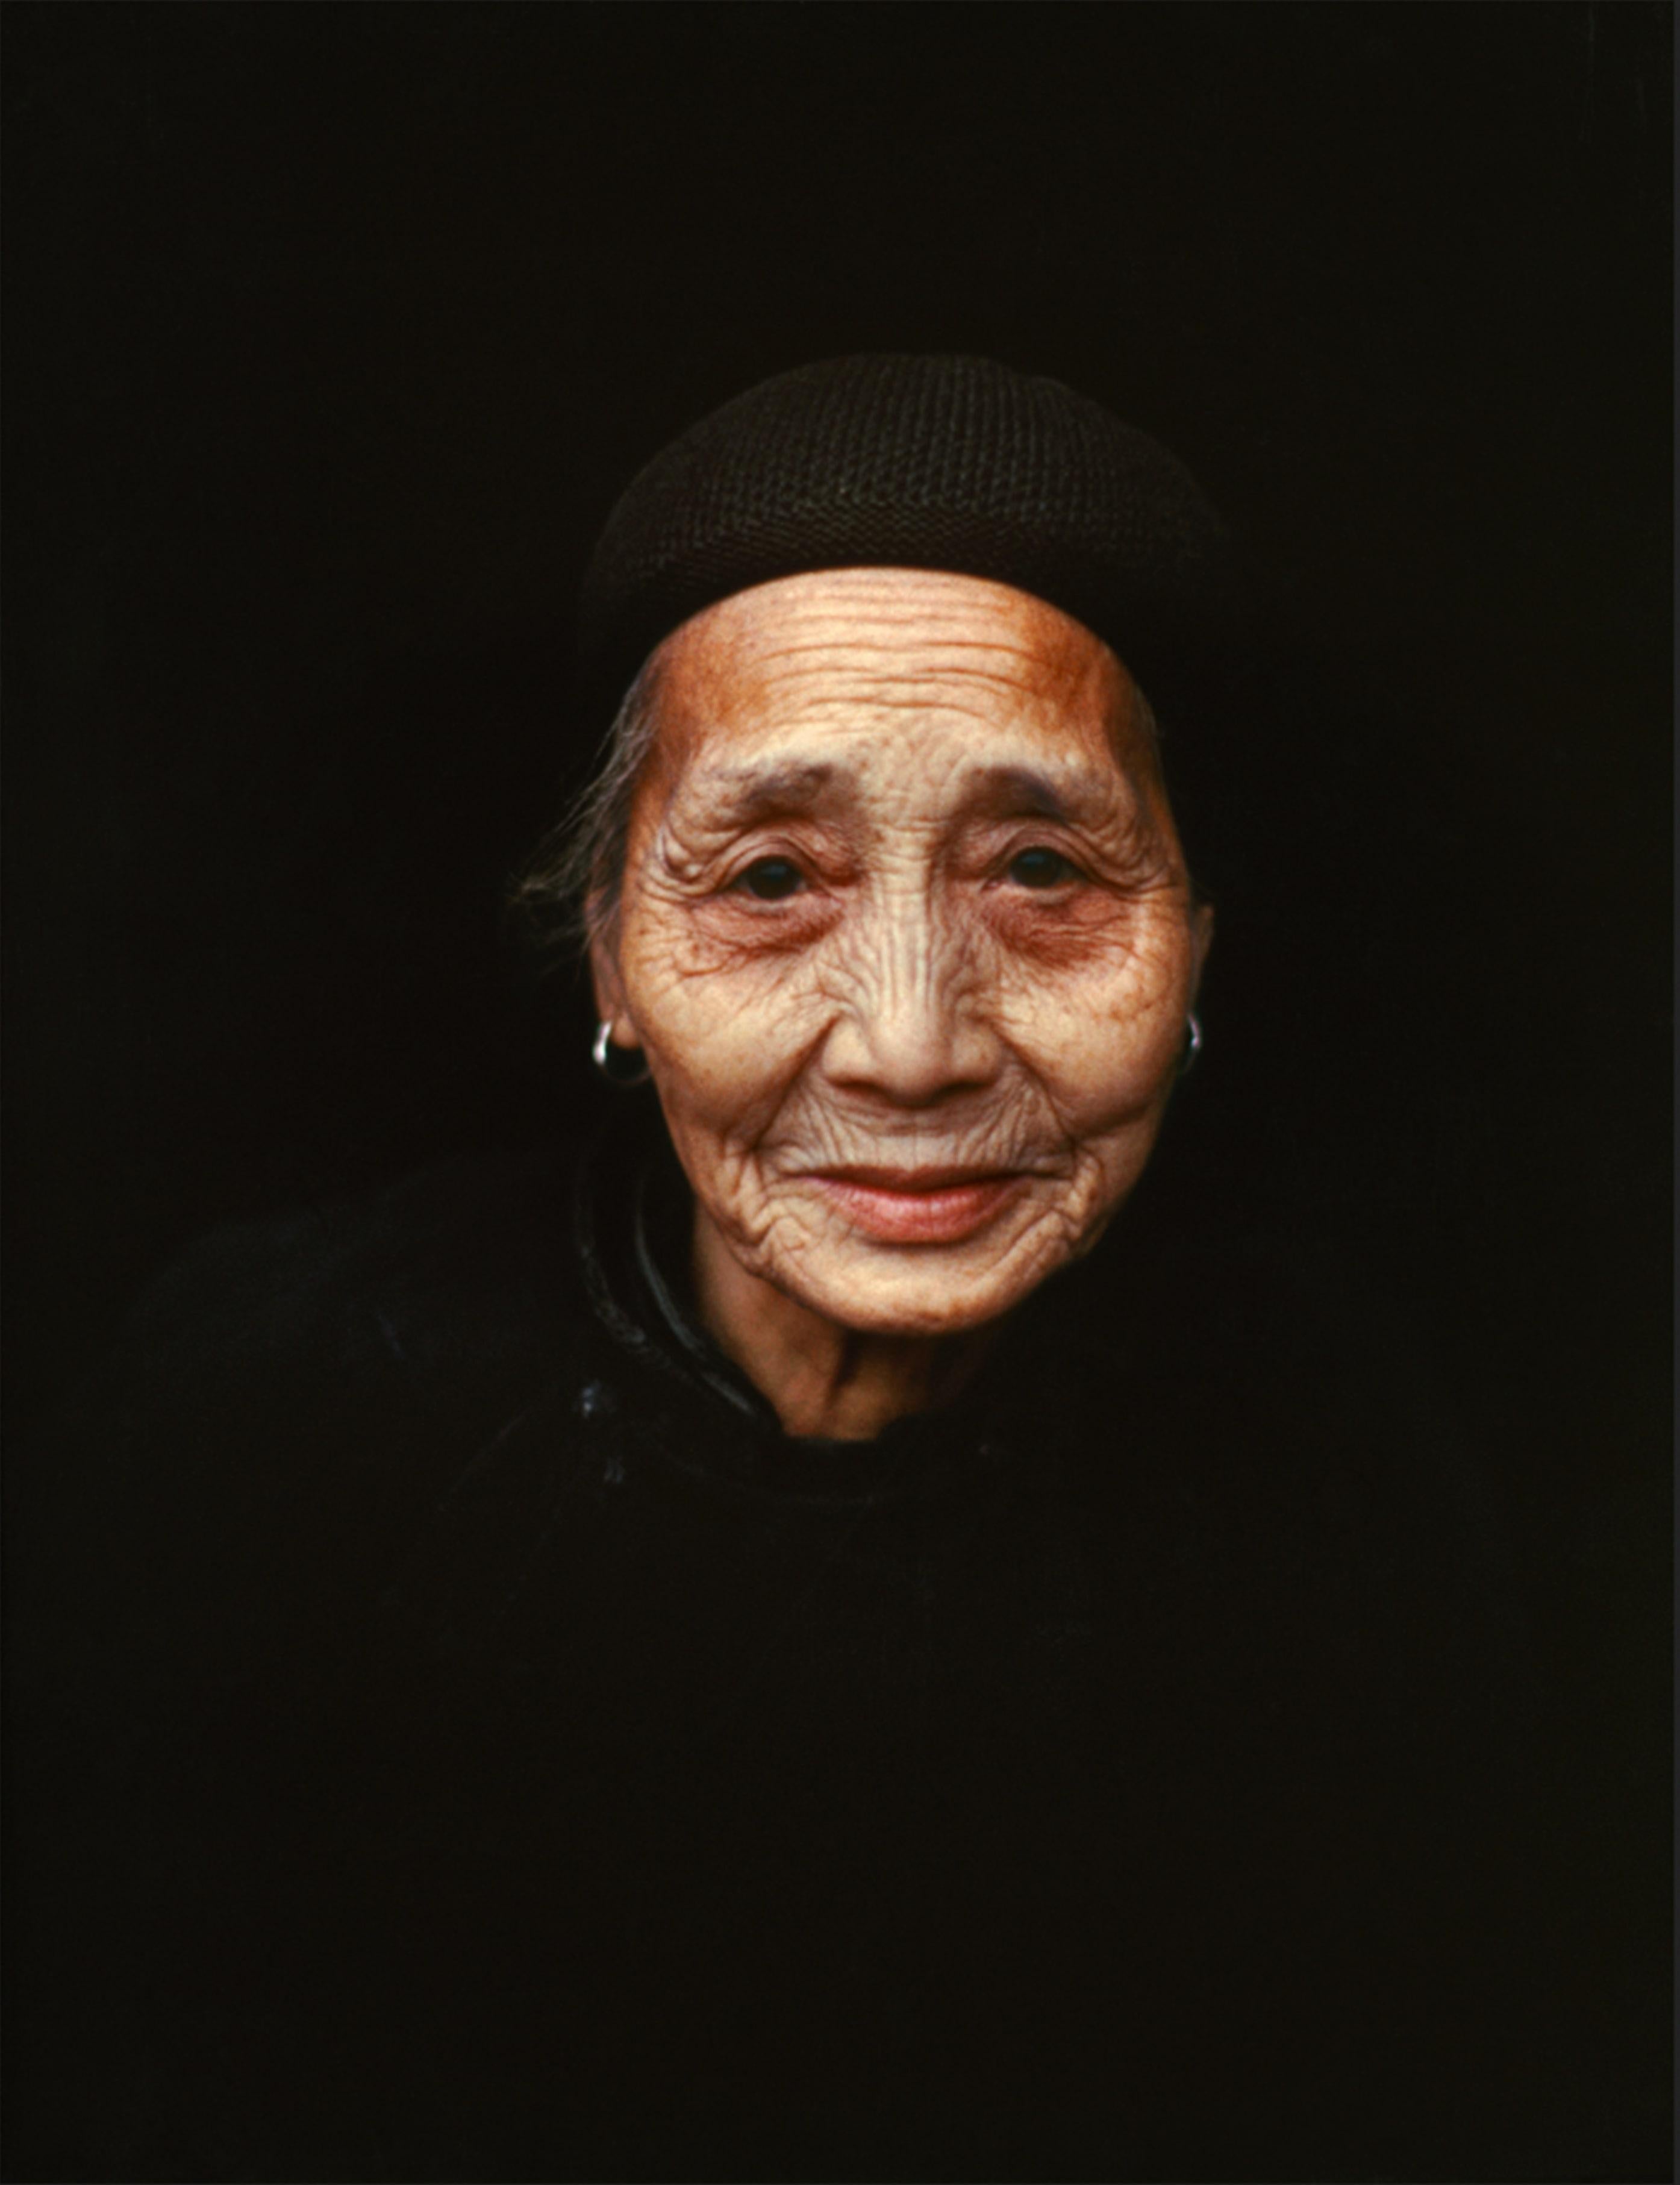 Eve Arnold – Eine im Ruhestand lebende Frau, Fotografie 1979, gedruckt nach